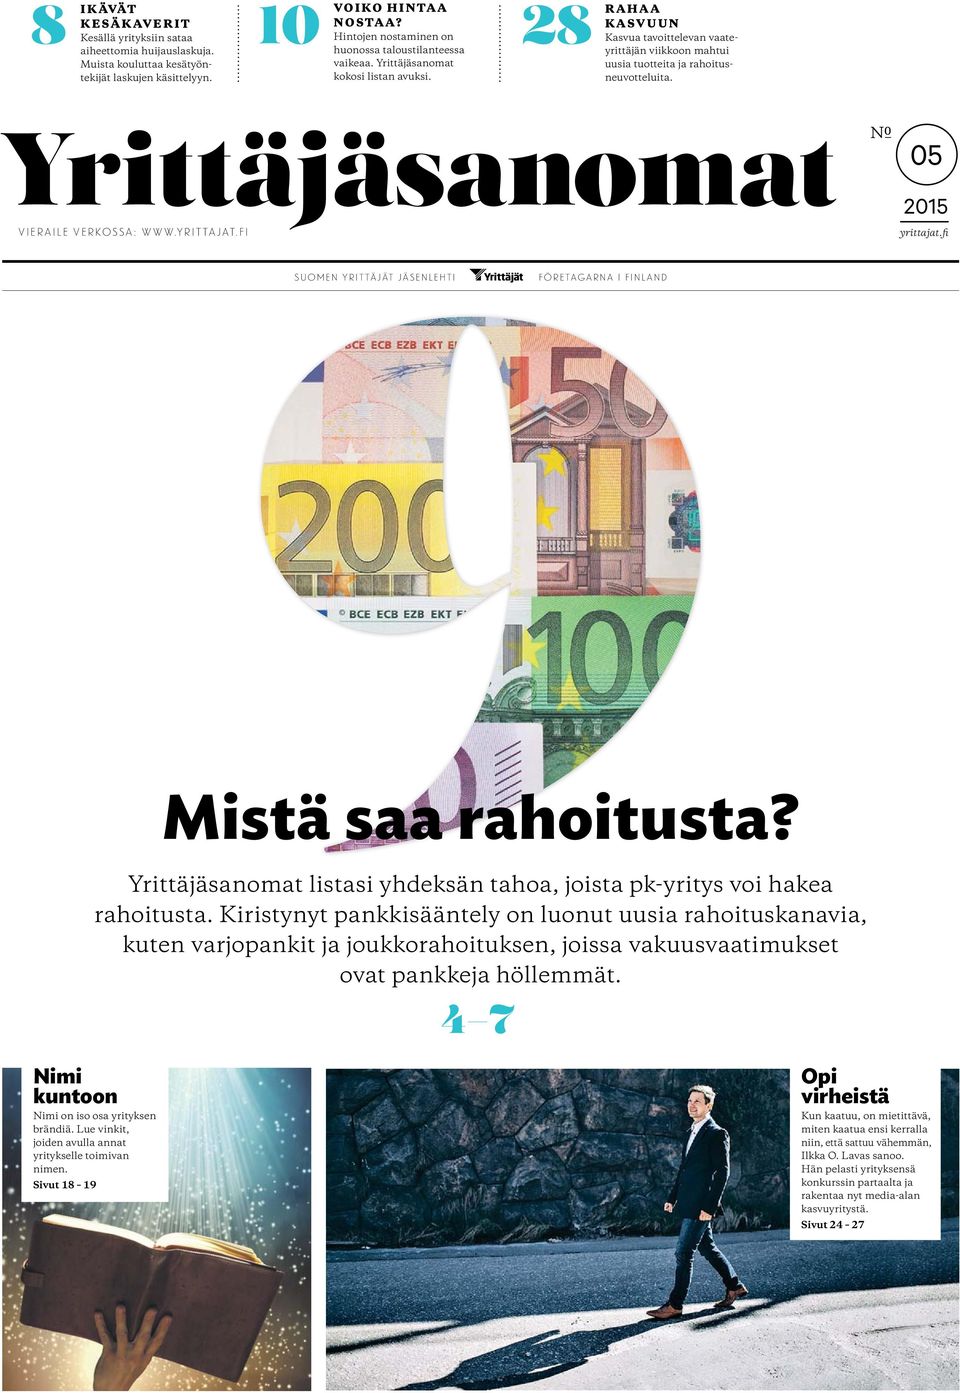 05 2015 vieraile verkossa: www.yrittajat.fi yrittajat.fi suomen yrittäjät jäsenlehti företagarna i finland Mistä saa rahoitusta? listasi yhdeksän tahoa, joista pk-yritys voi hakea rahoitusta.